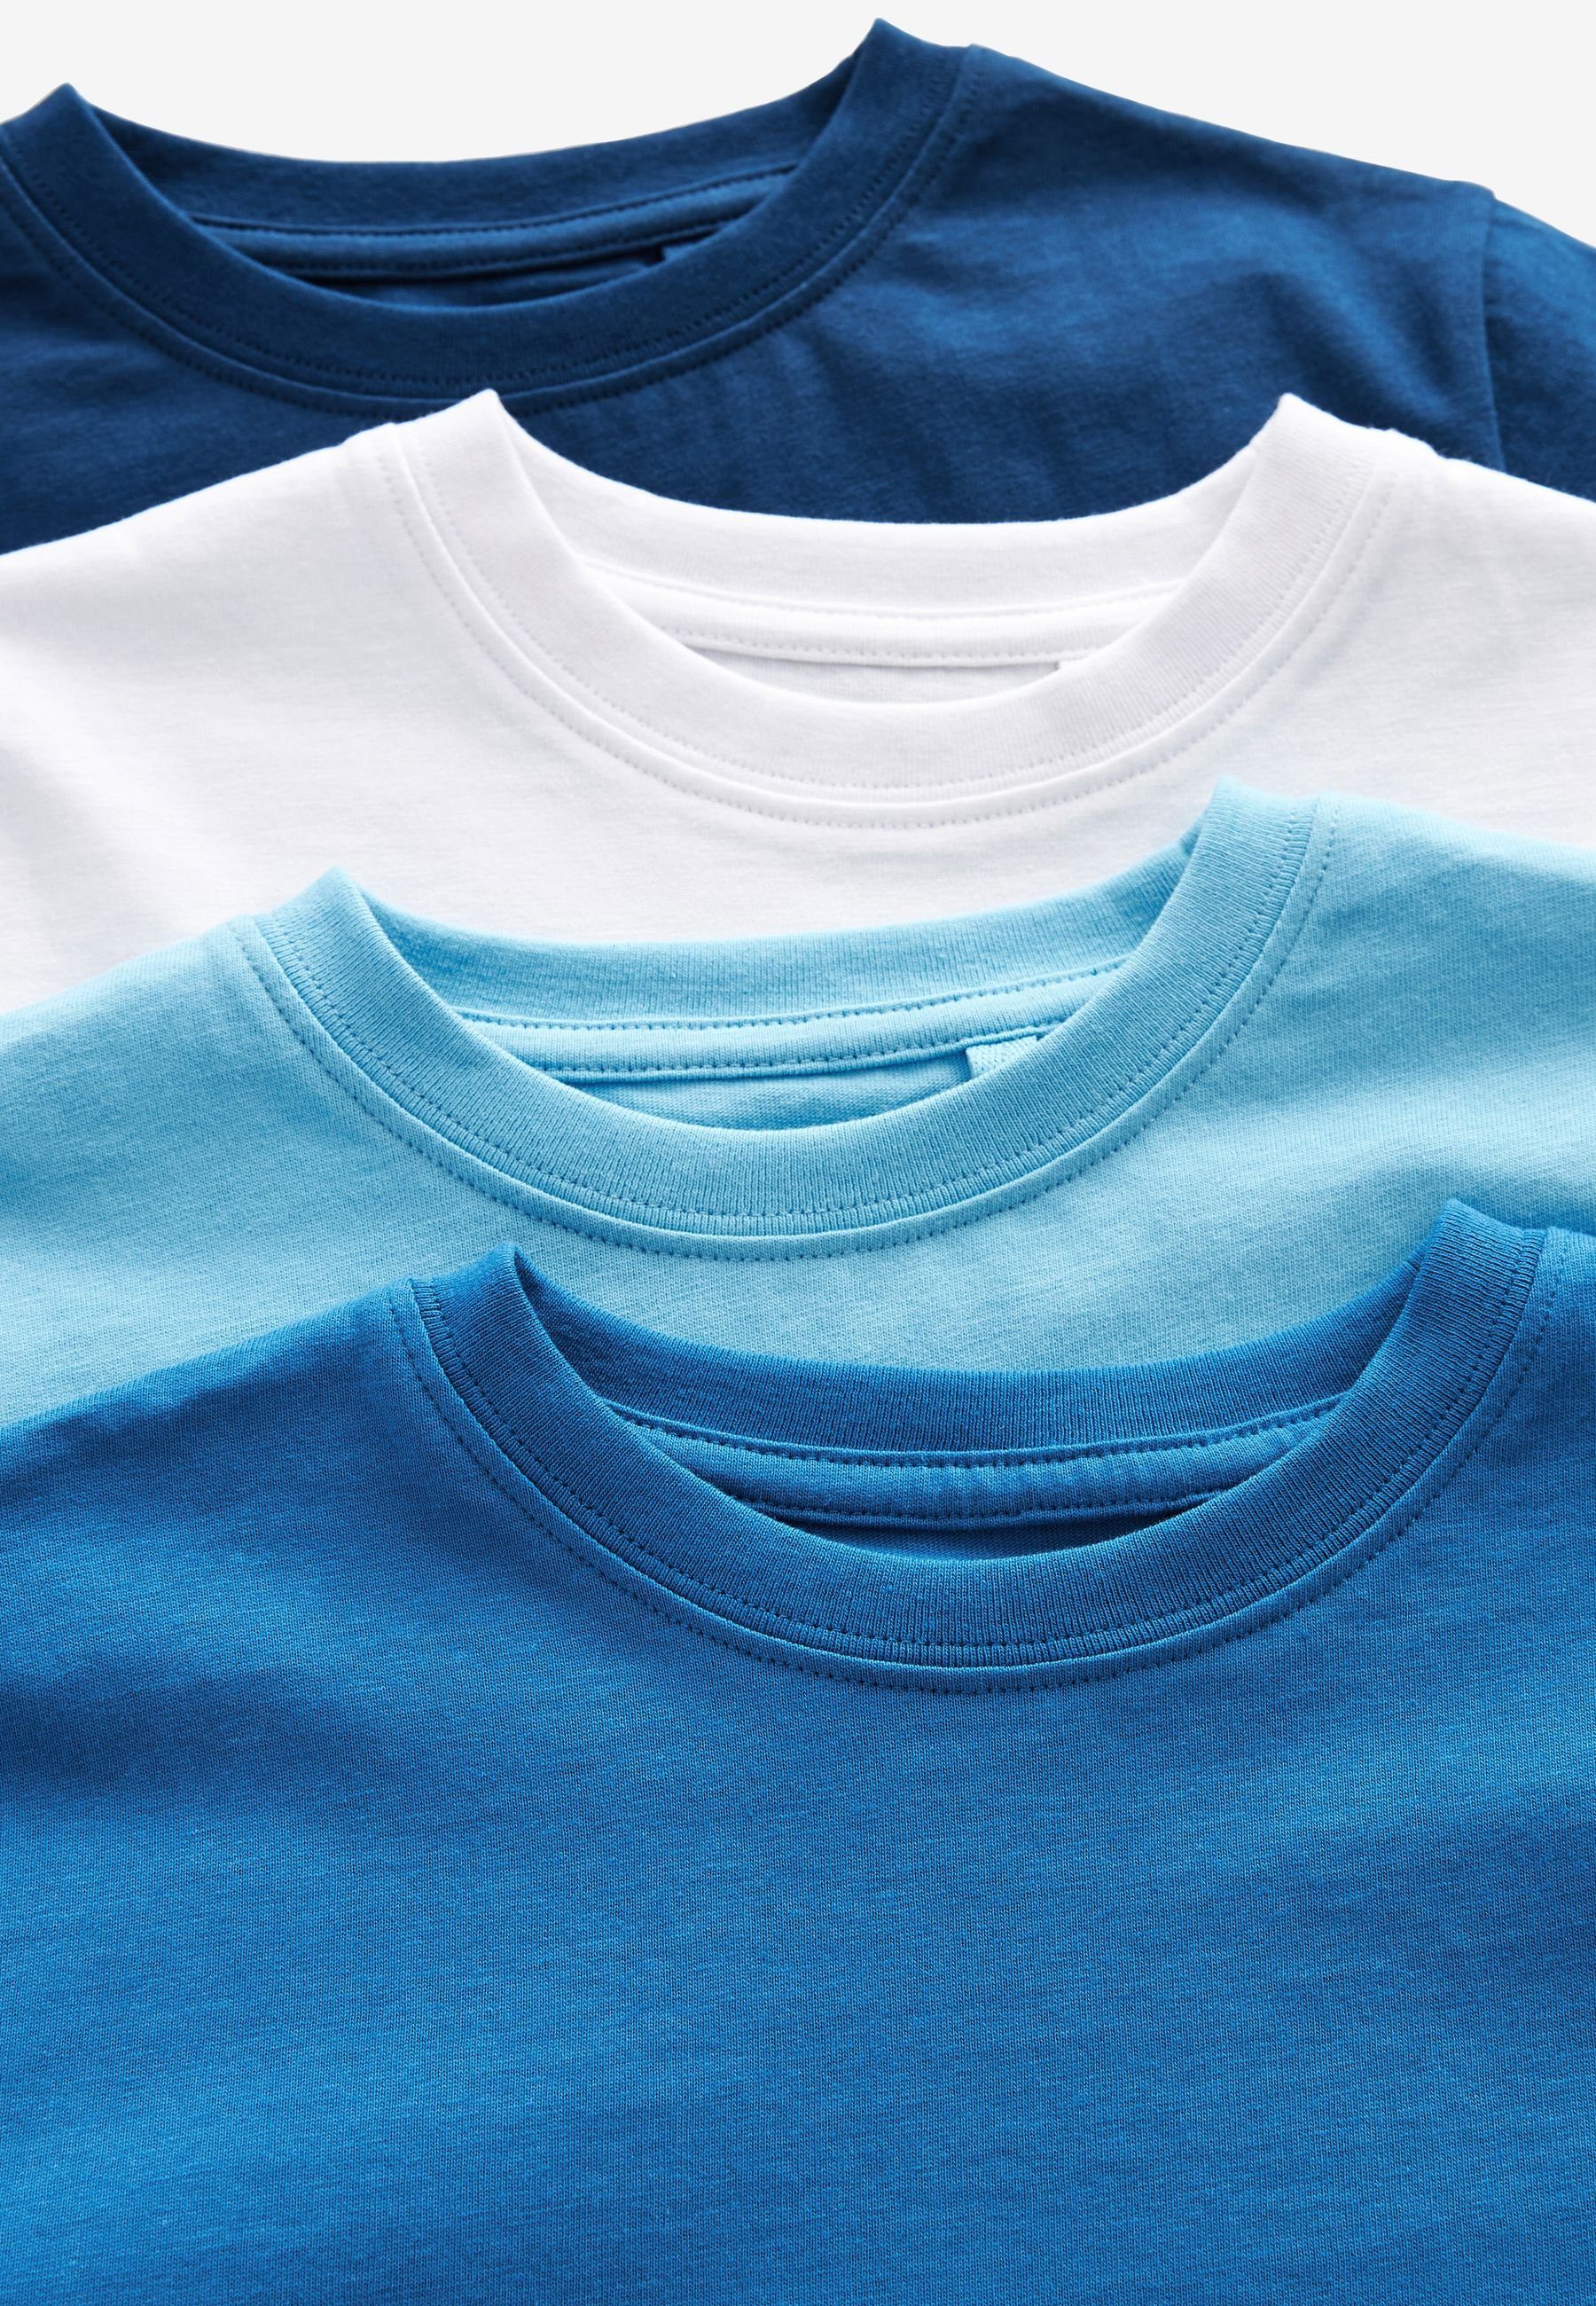 Next T-Shirt 4-Pack T-Shirts, Blues (4-tlg)